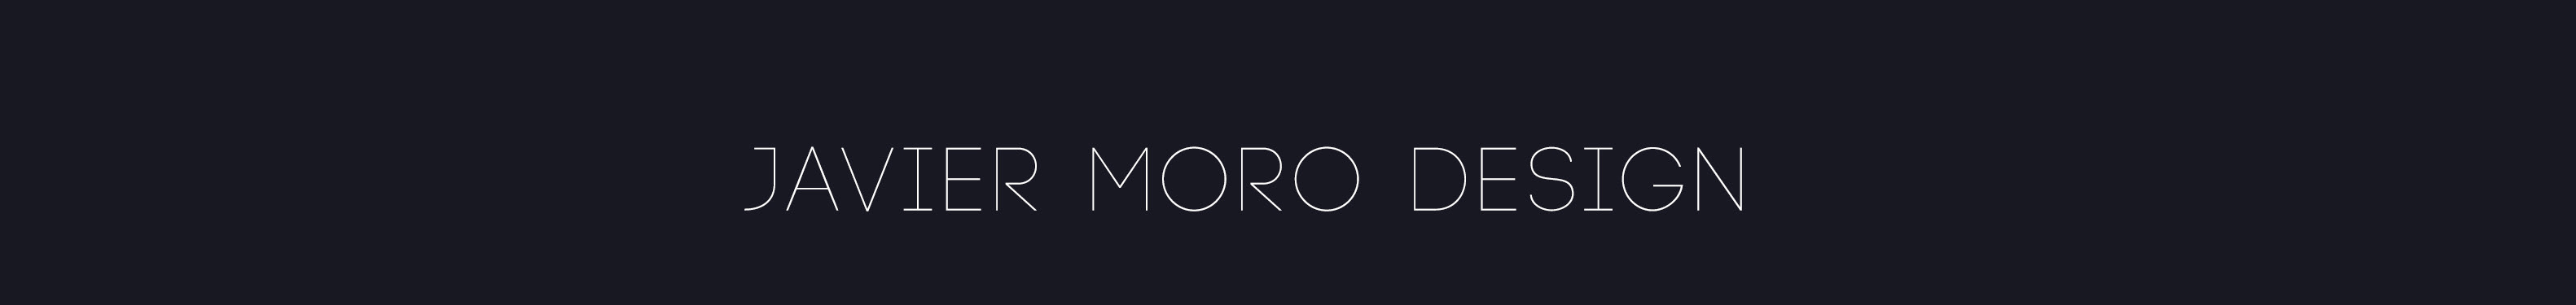 Javier Moros profilbanner